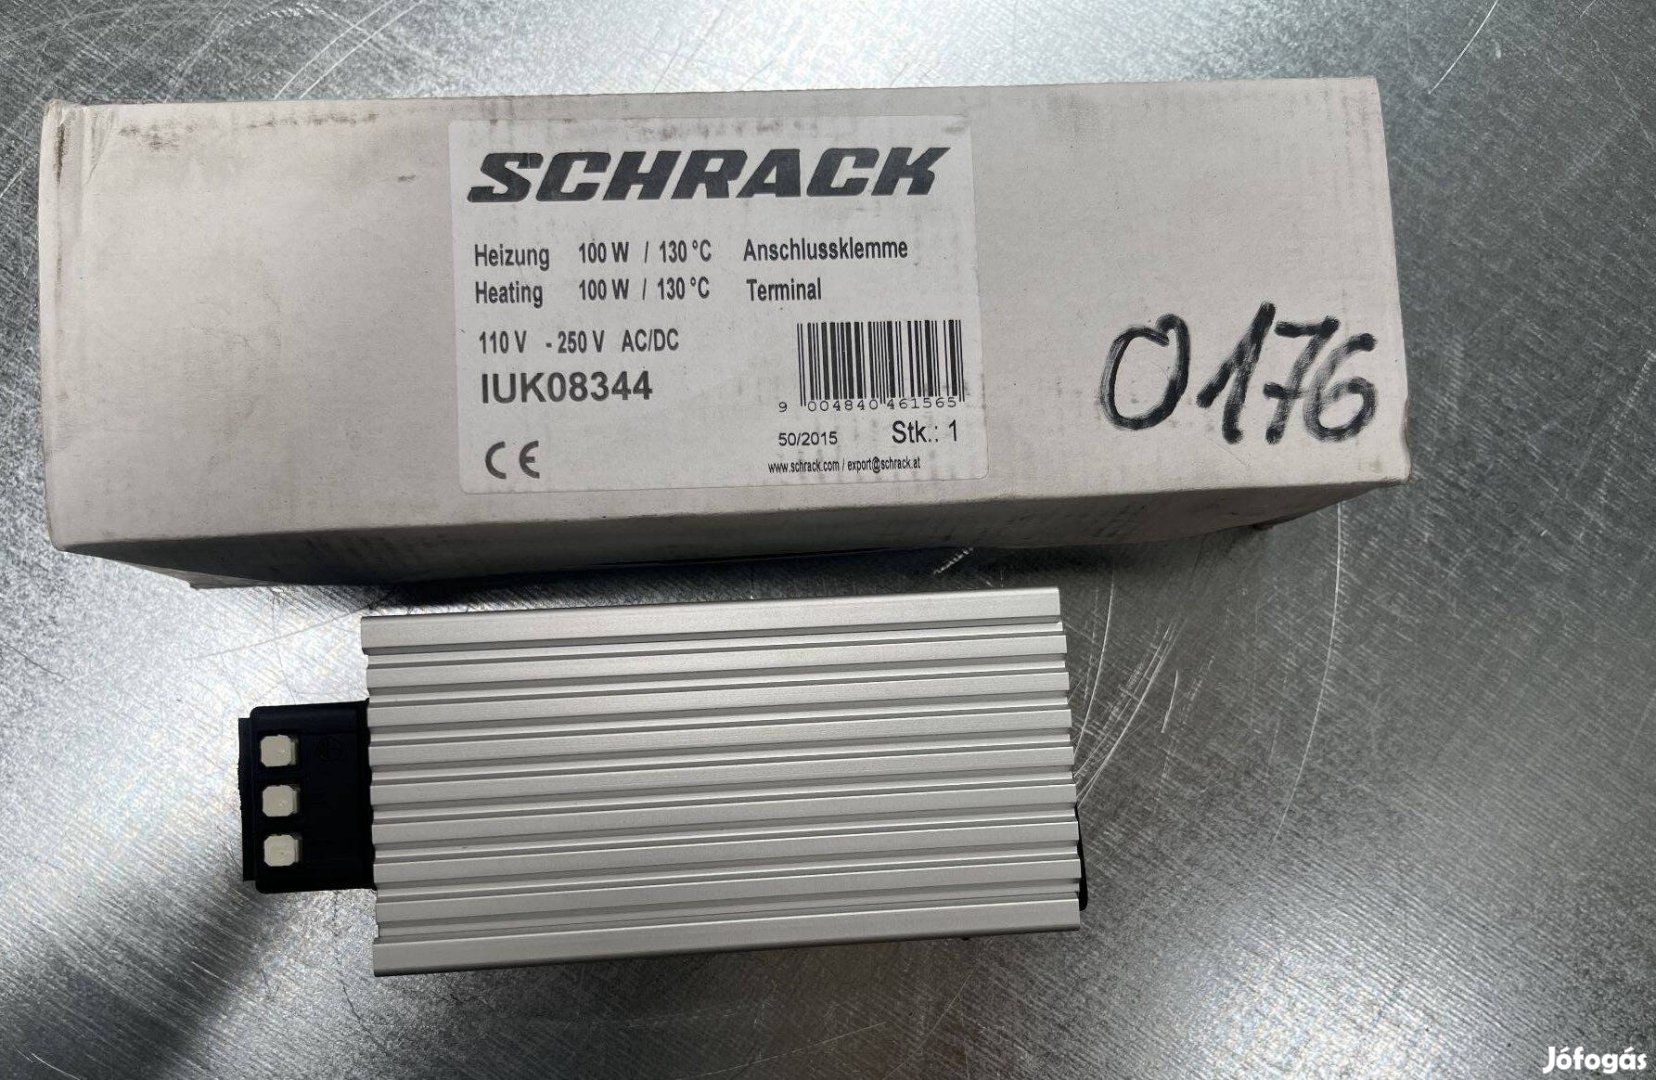 Schrack IUK08344 szekrényfűtés (AB0176-0185)